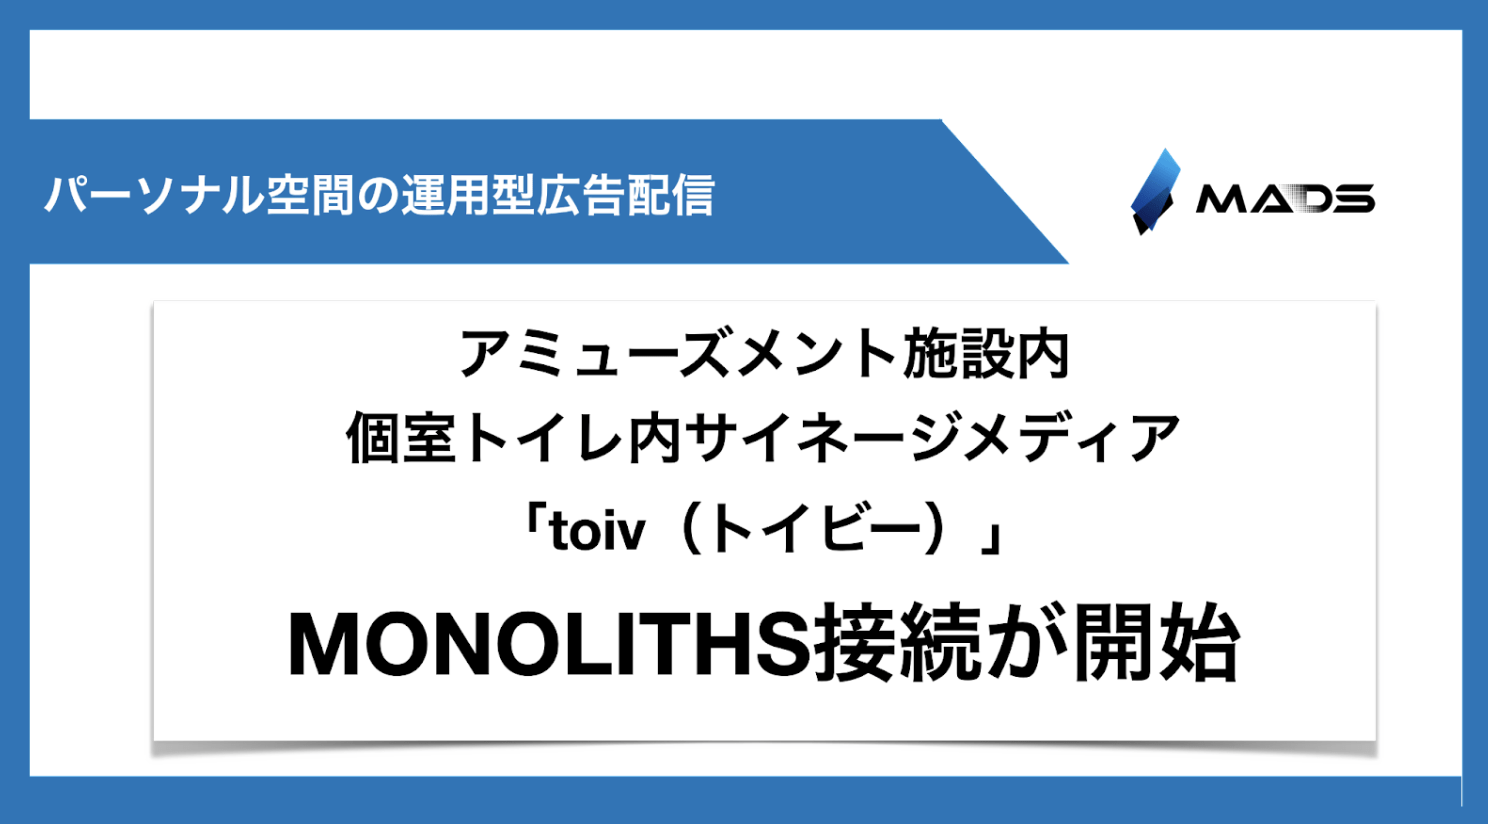 アミューズメント施設の個室トイレ内サイネージメディア「toiv（トイビー）」に、MONOLITHSの接続を開始